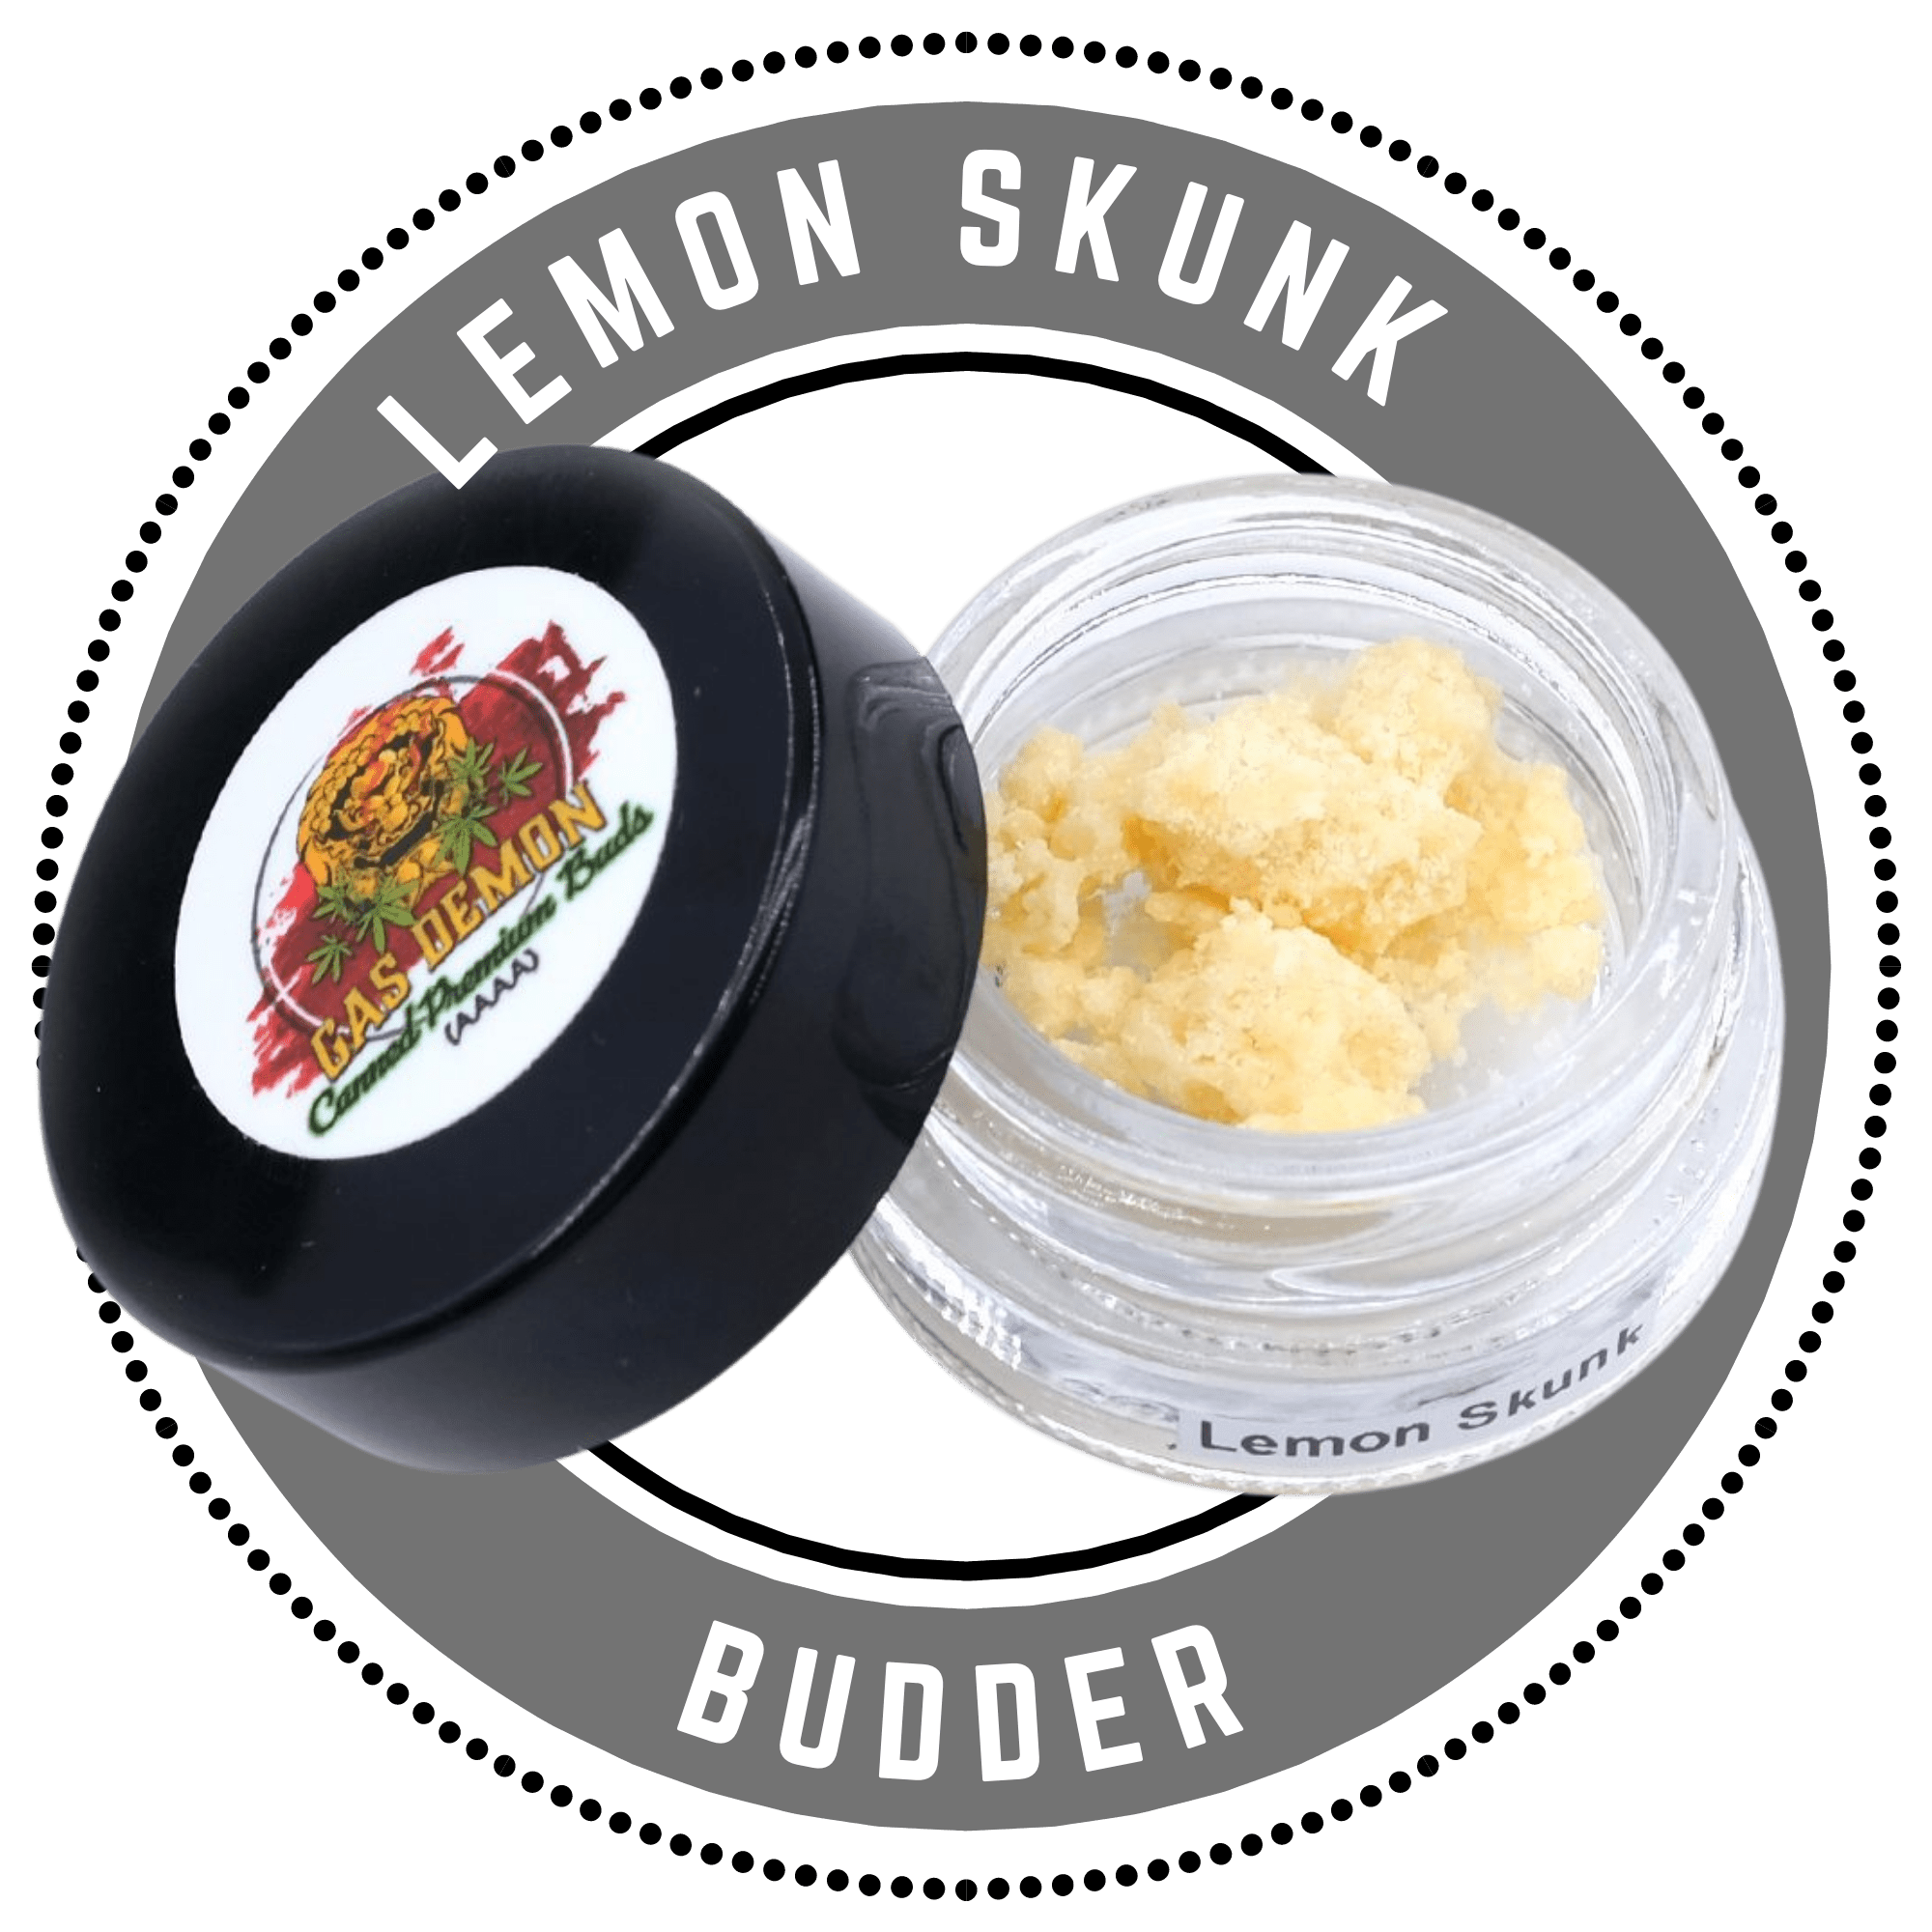 Lemon Skunk budder